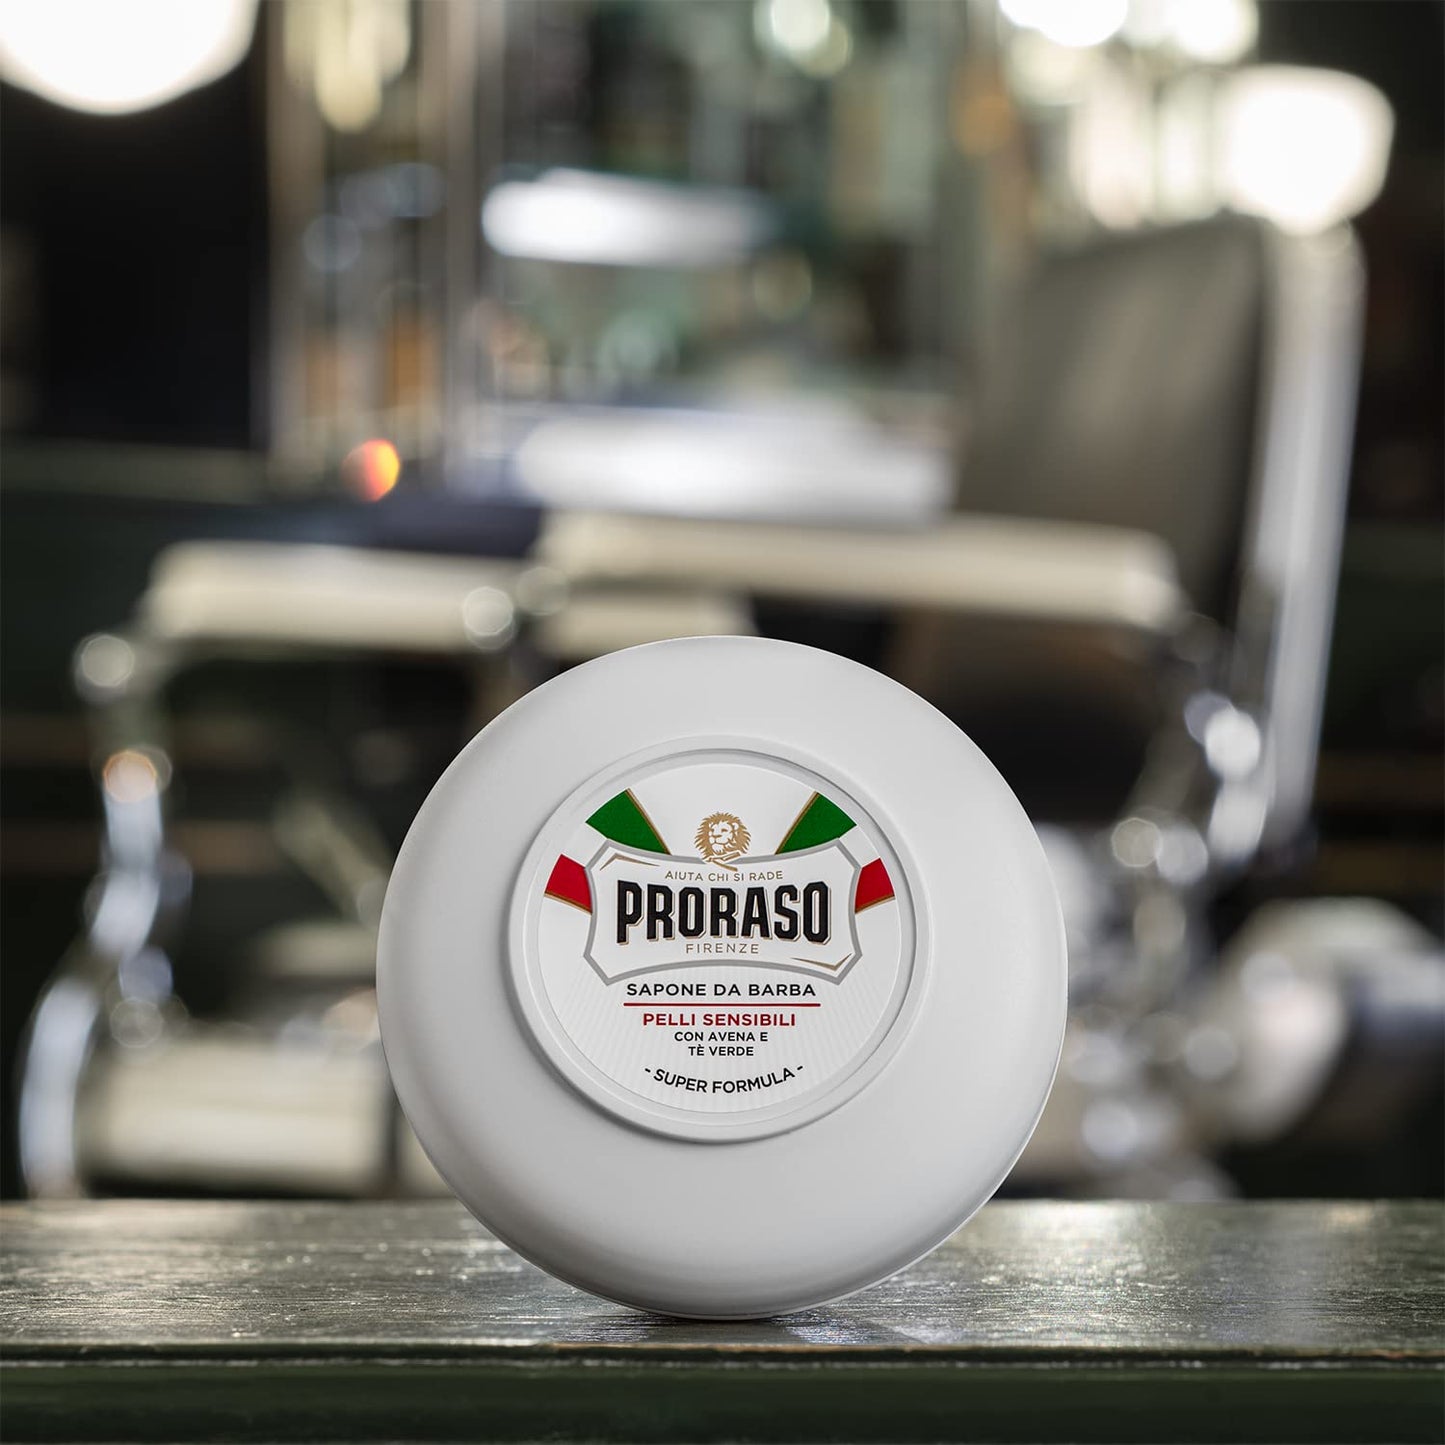 Proraso Shaving Soap in a Bowl, Sensitive Skin, 5.2 Oz